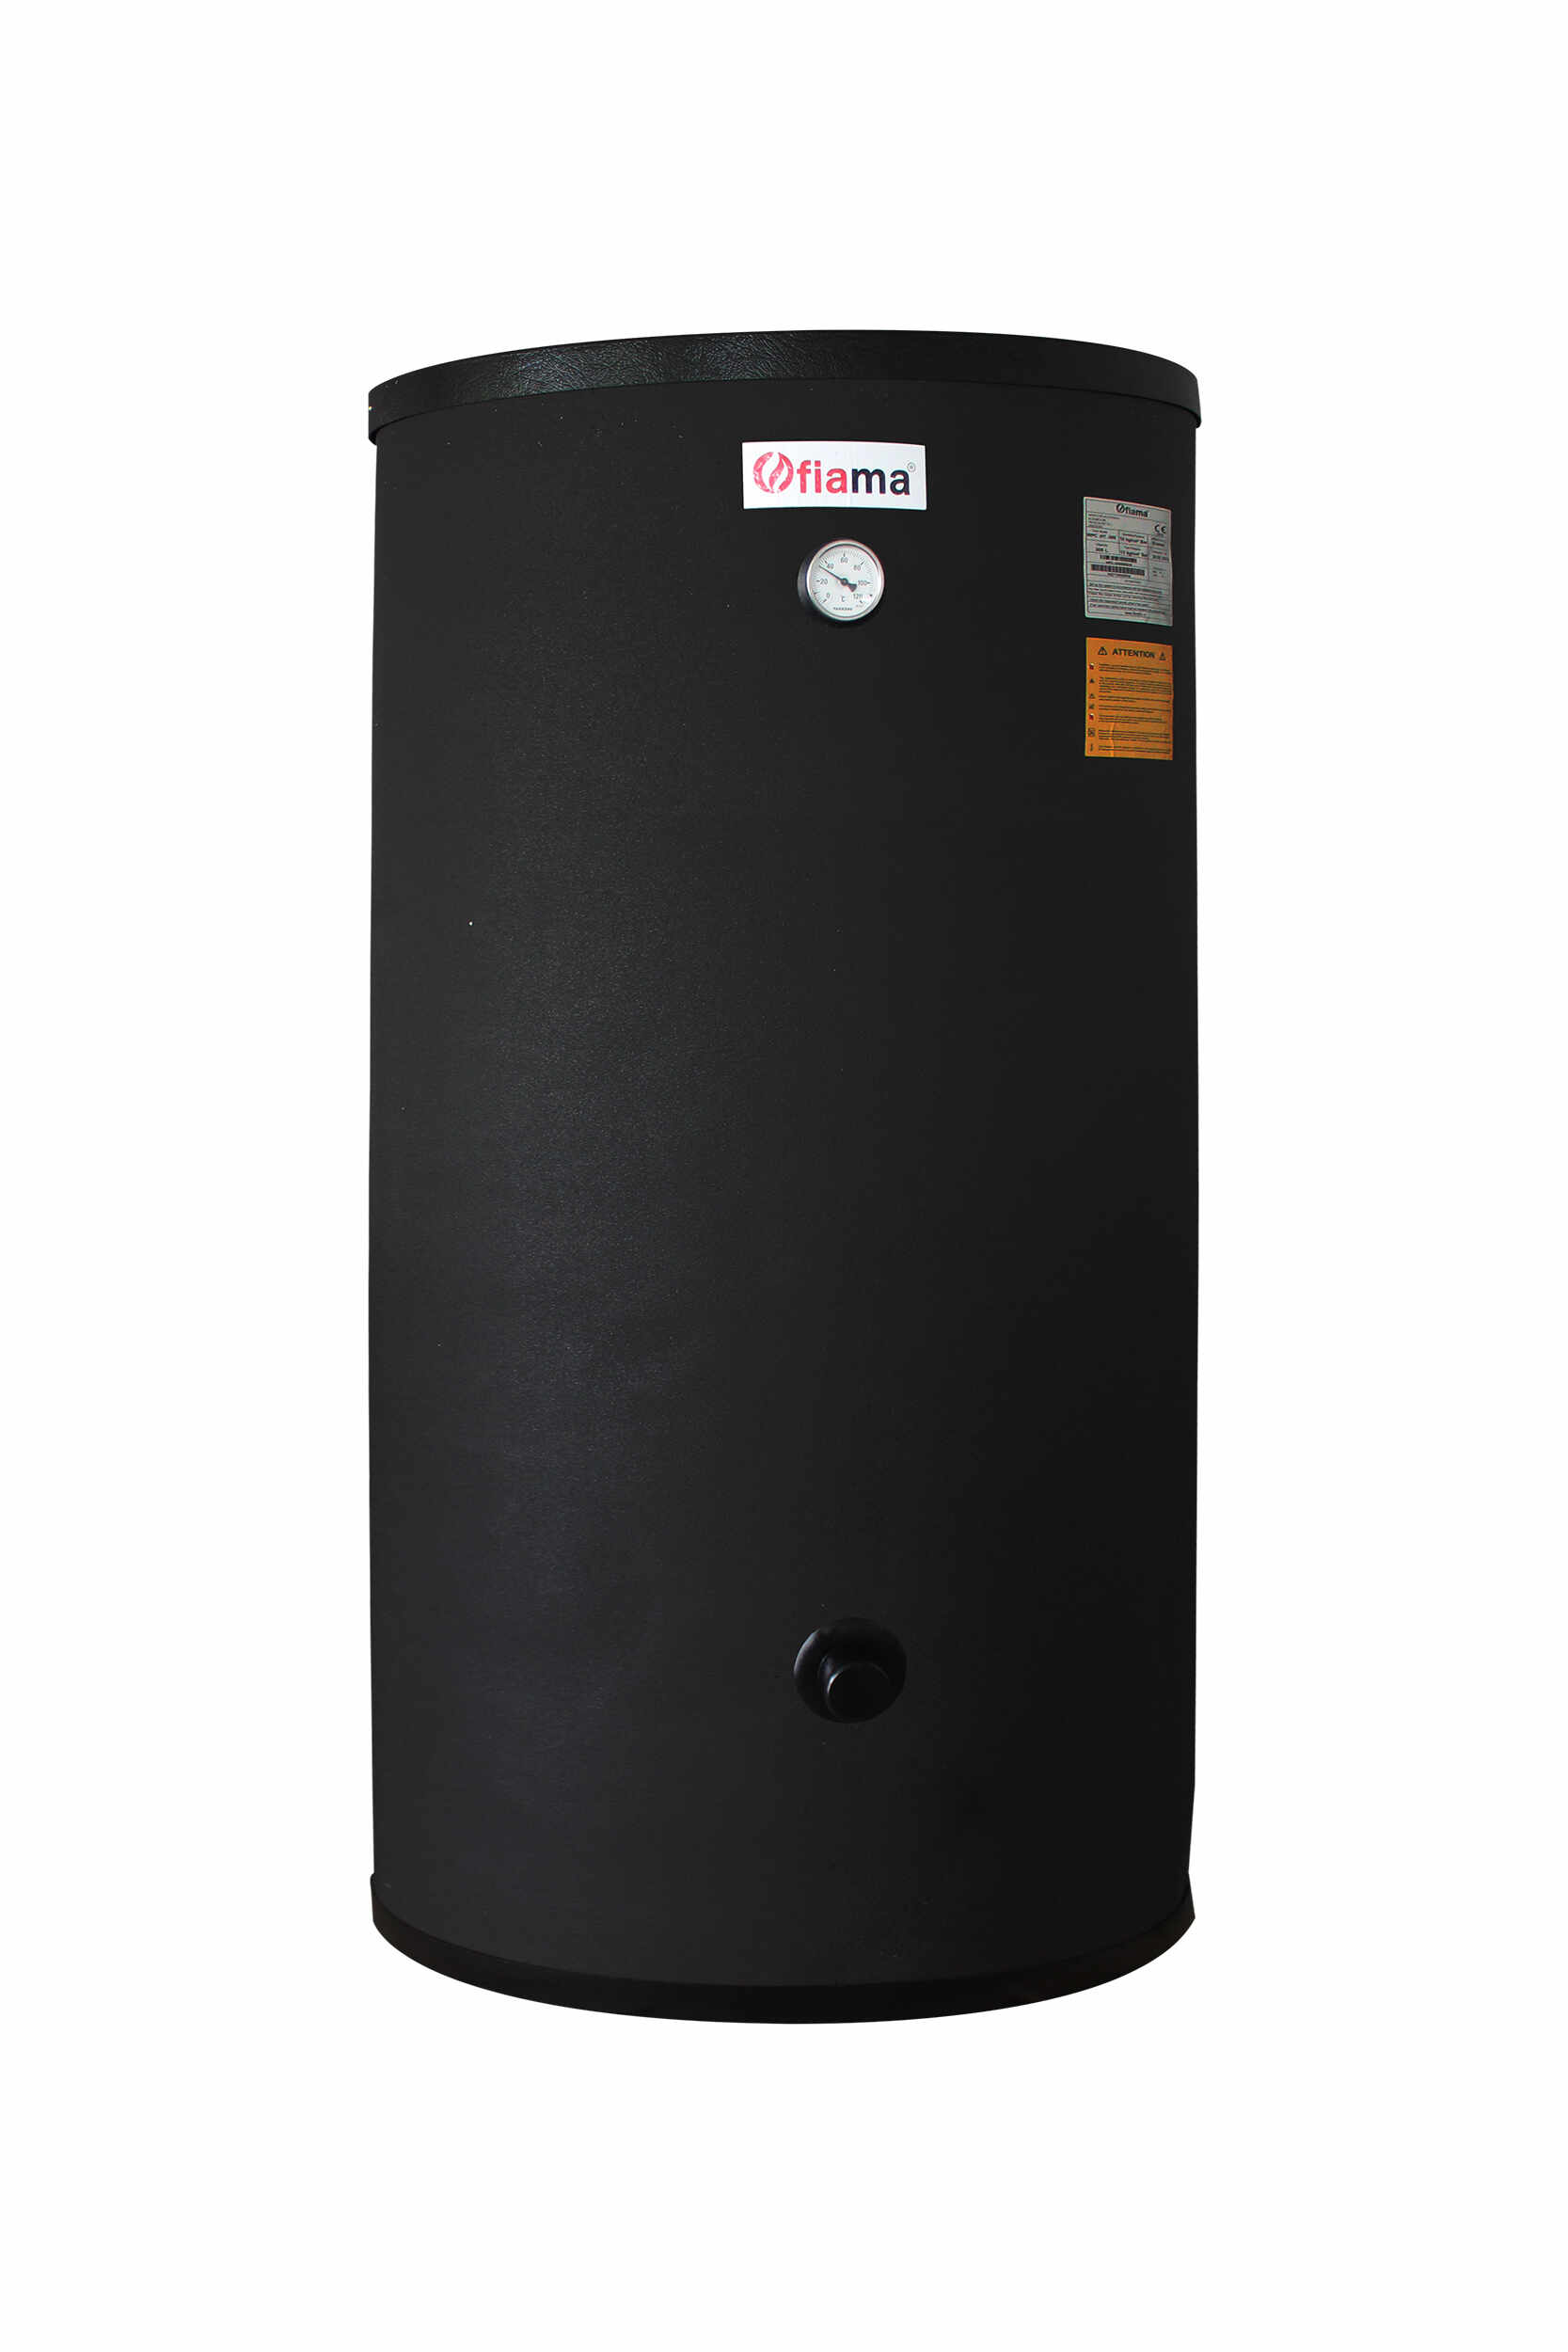 Boiler cu 2 serpentine FIAMA WPC HT 160 LT 2S, pentru centrala termica si solar, montaj pe sol, izolatie termica, manta de protectie, serpentine bivalent